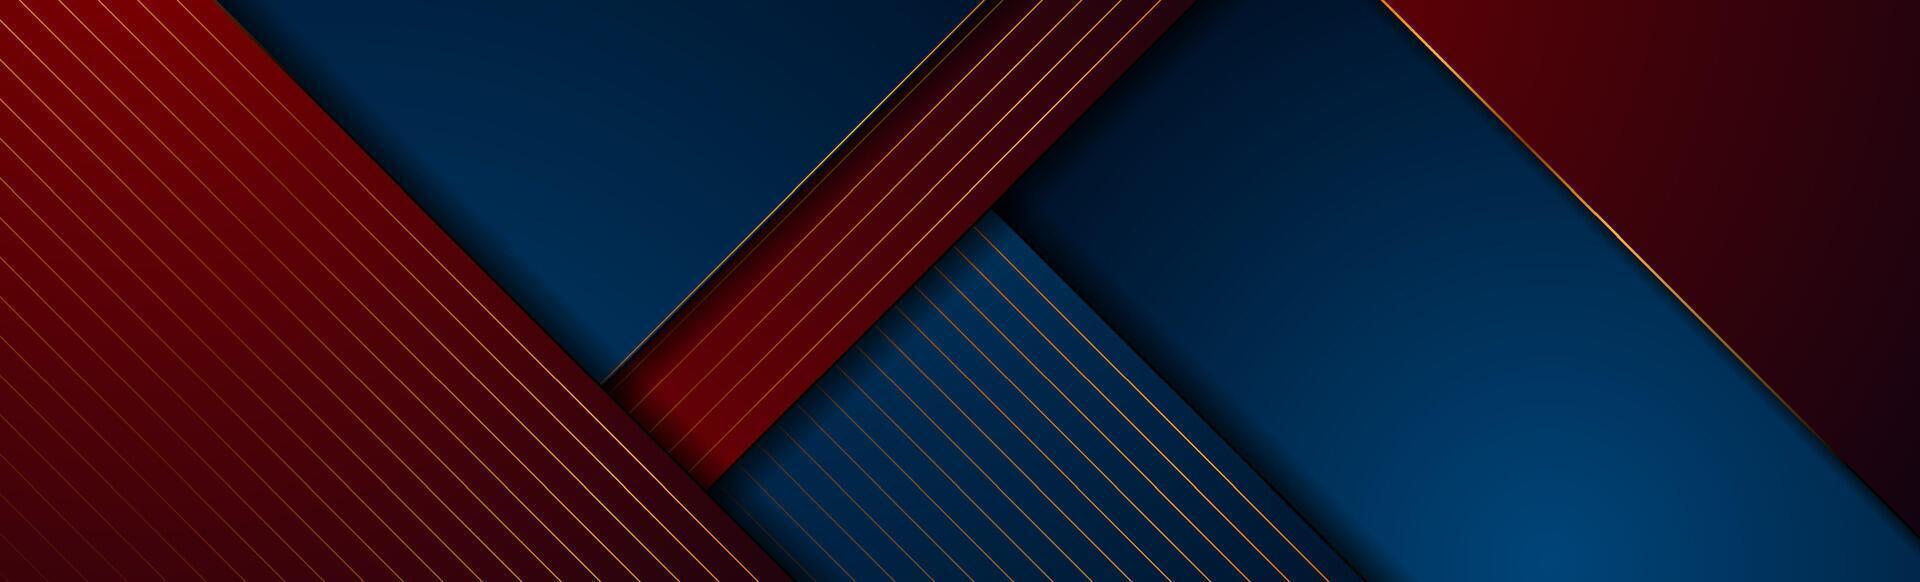 buio blu, rosso e d'oro astratto Tech geometrico sfondo vettore